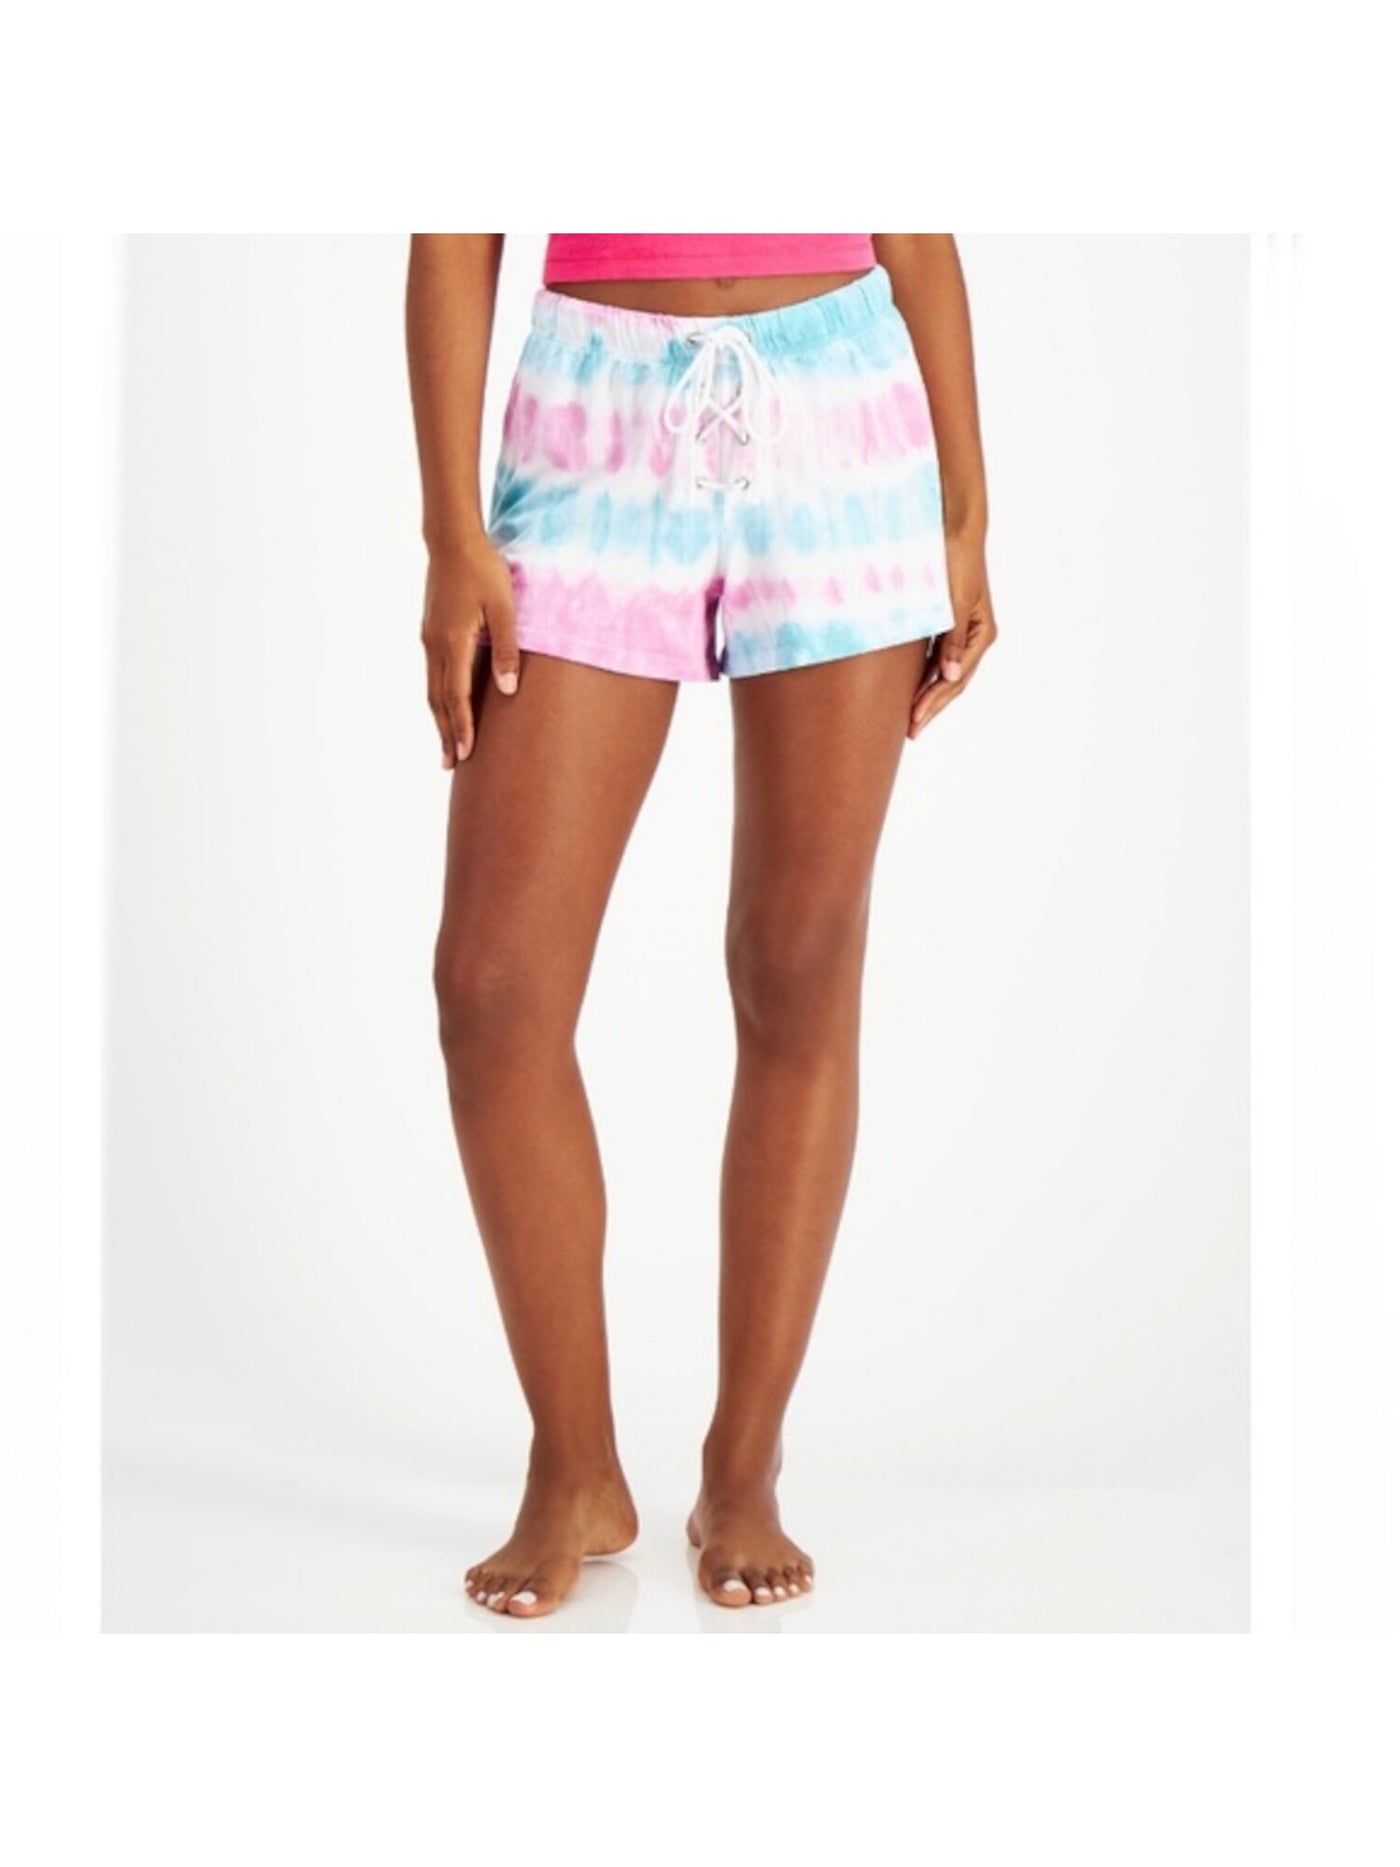 JENNI Intimates Pink Knit Sleepwear Shorts Size: L